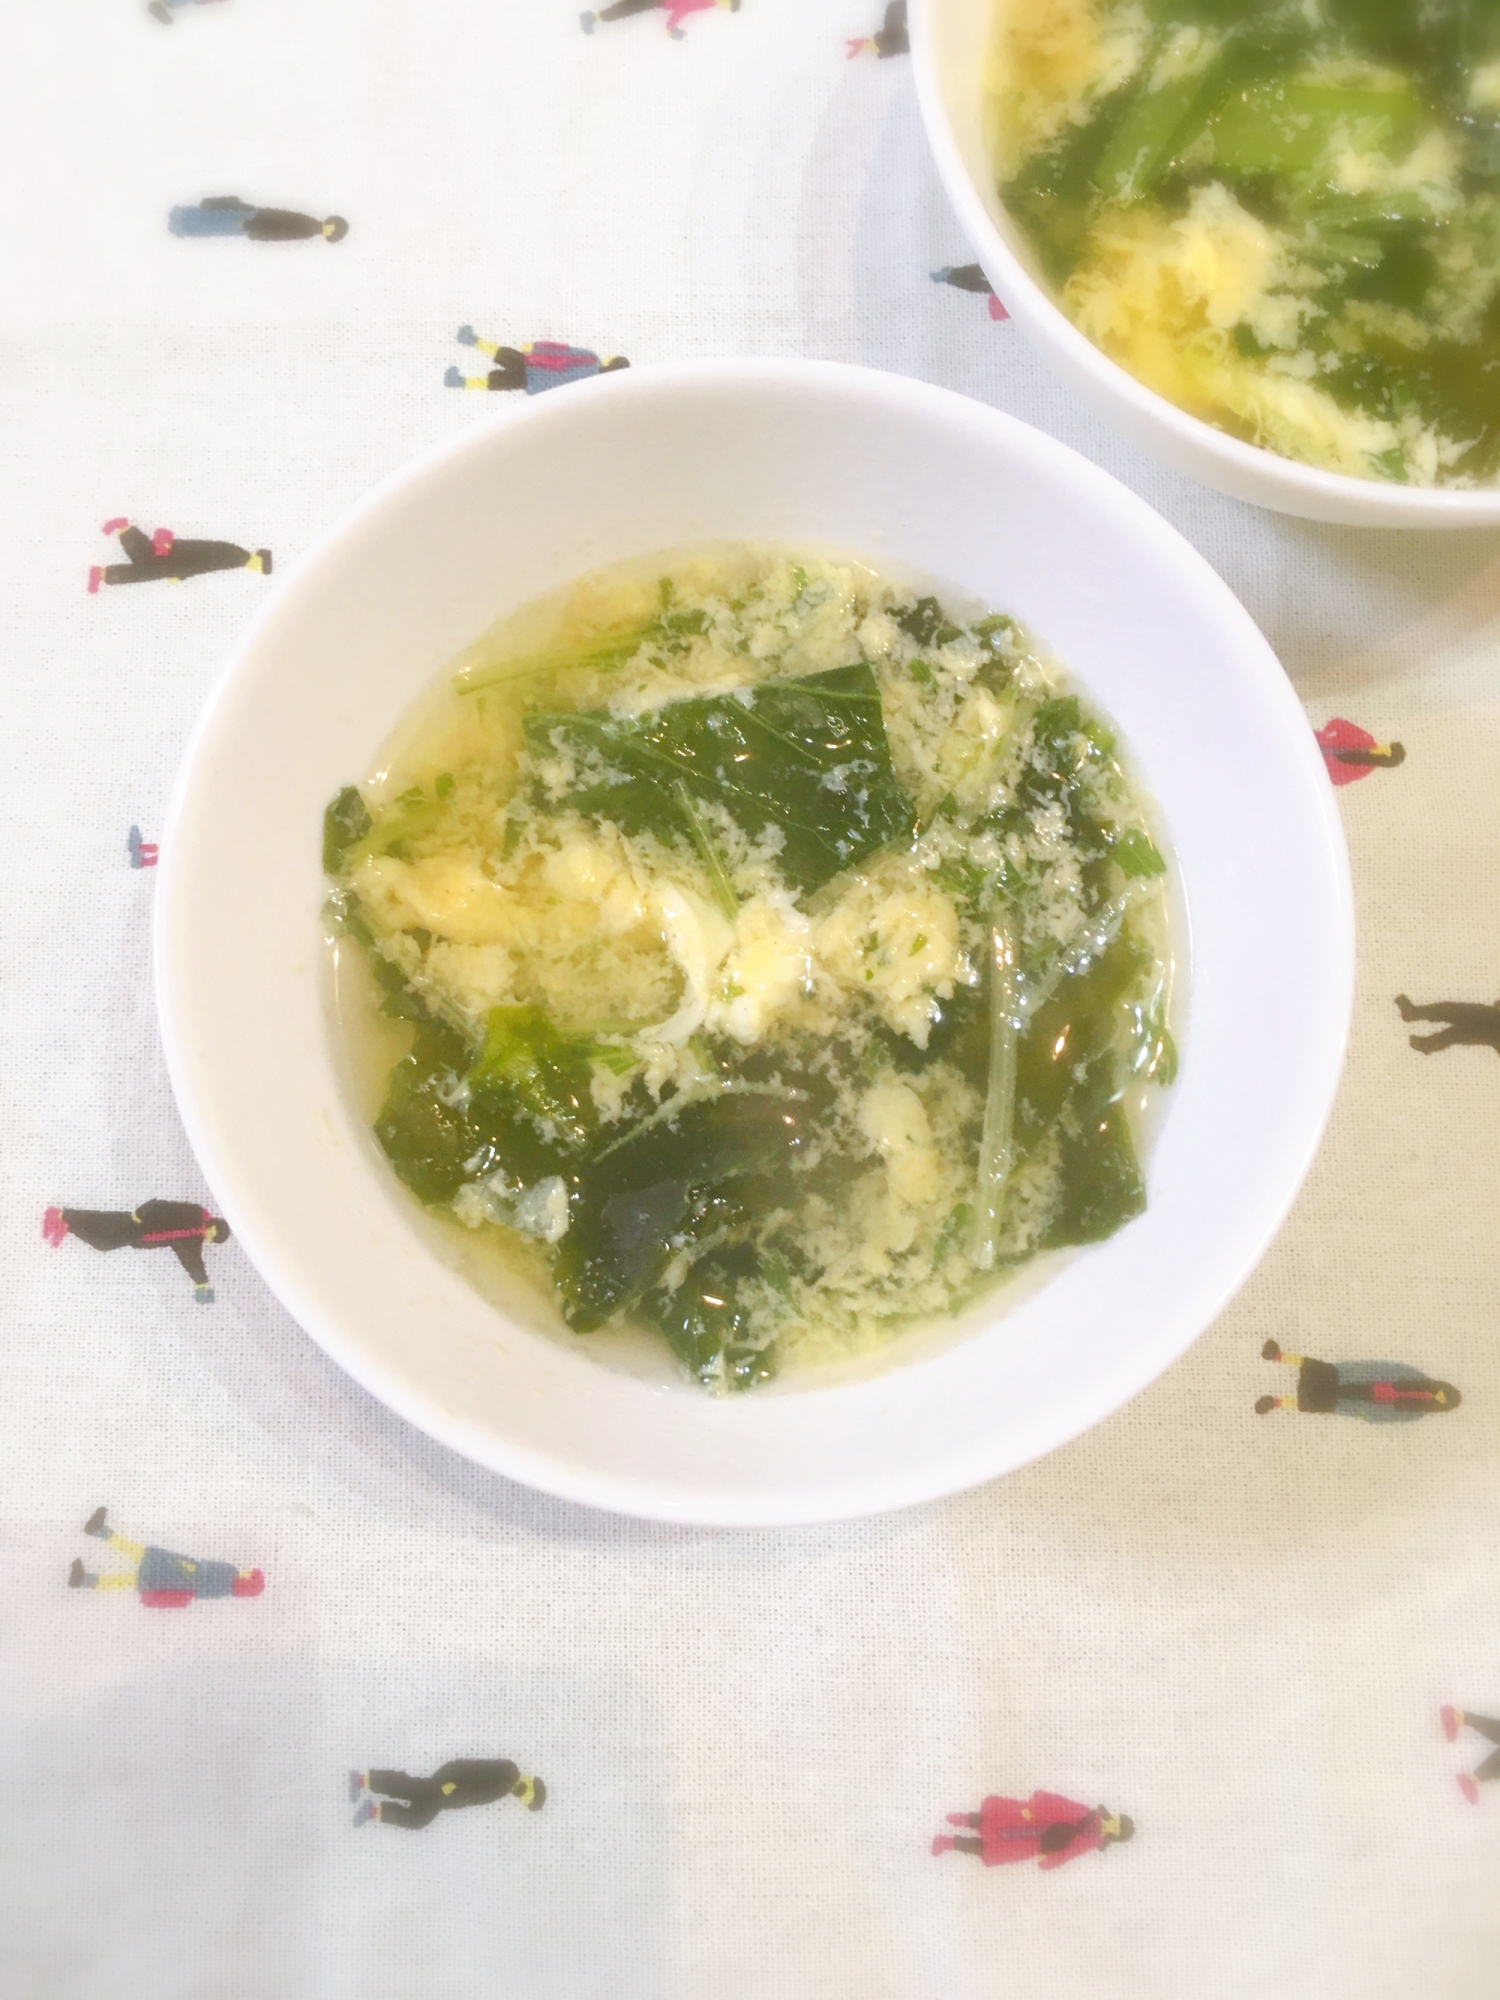 水菜と小松菜の卵スープ